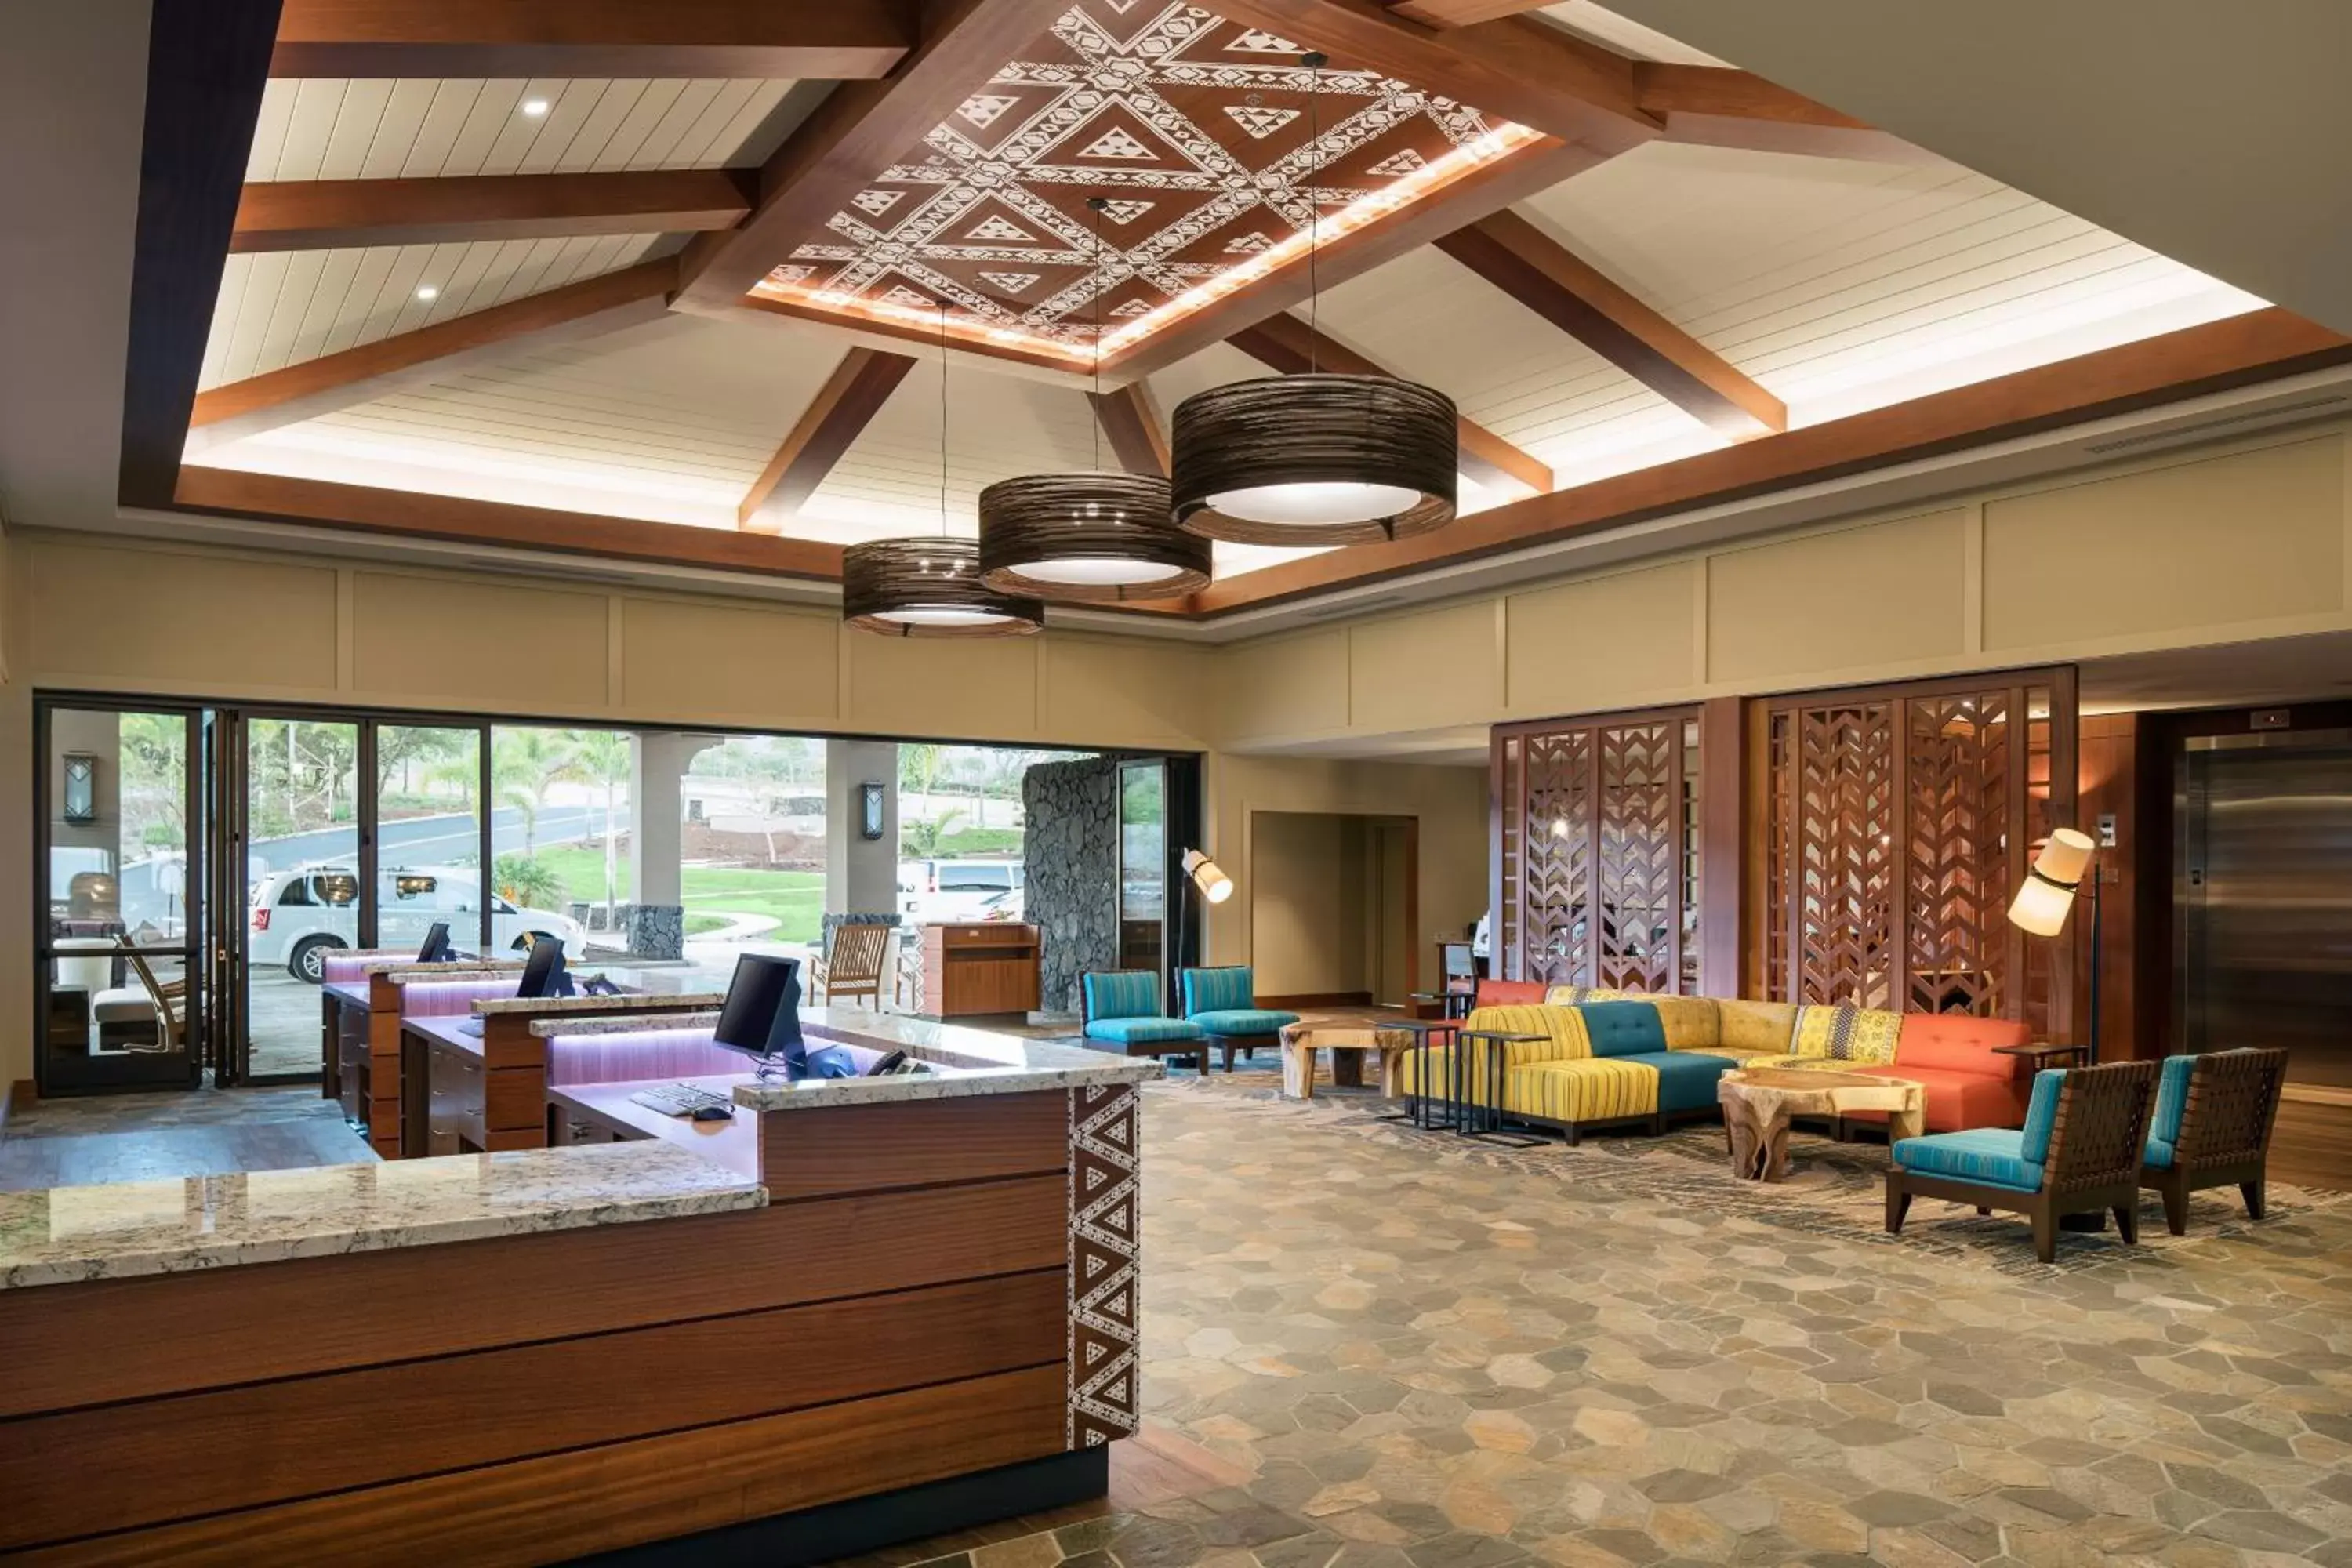 Lobby or reception, Lobby/Reception in Residence Inn by Marriott Maui Wailea